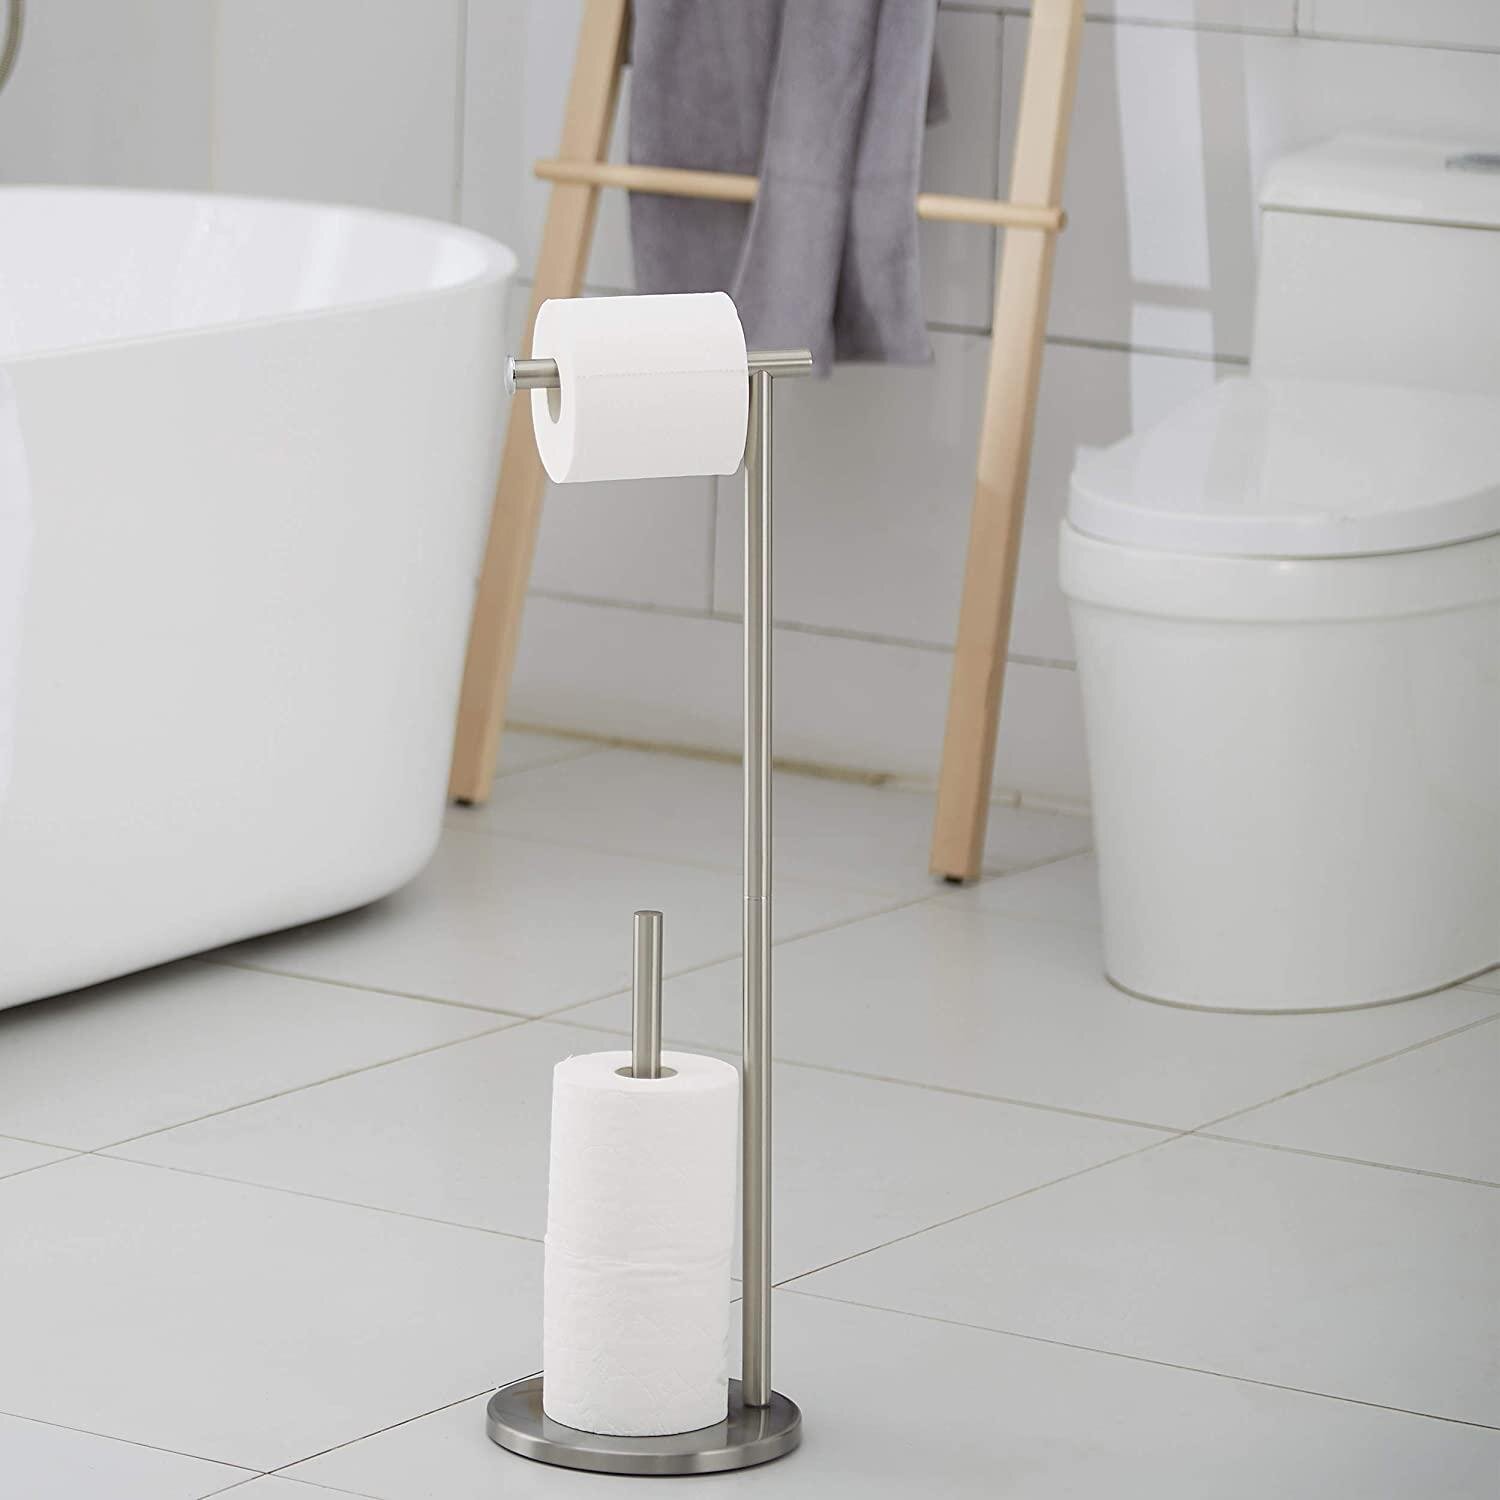 Bathroom Dispenser Free Standing Toilet Paper Holder 